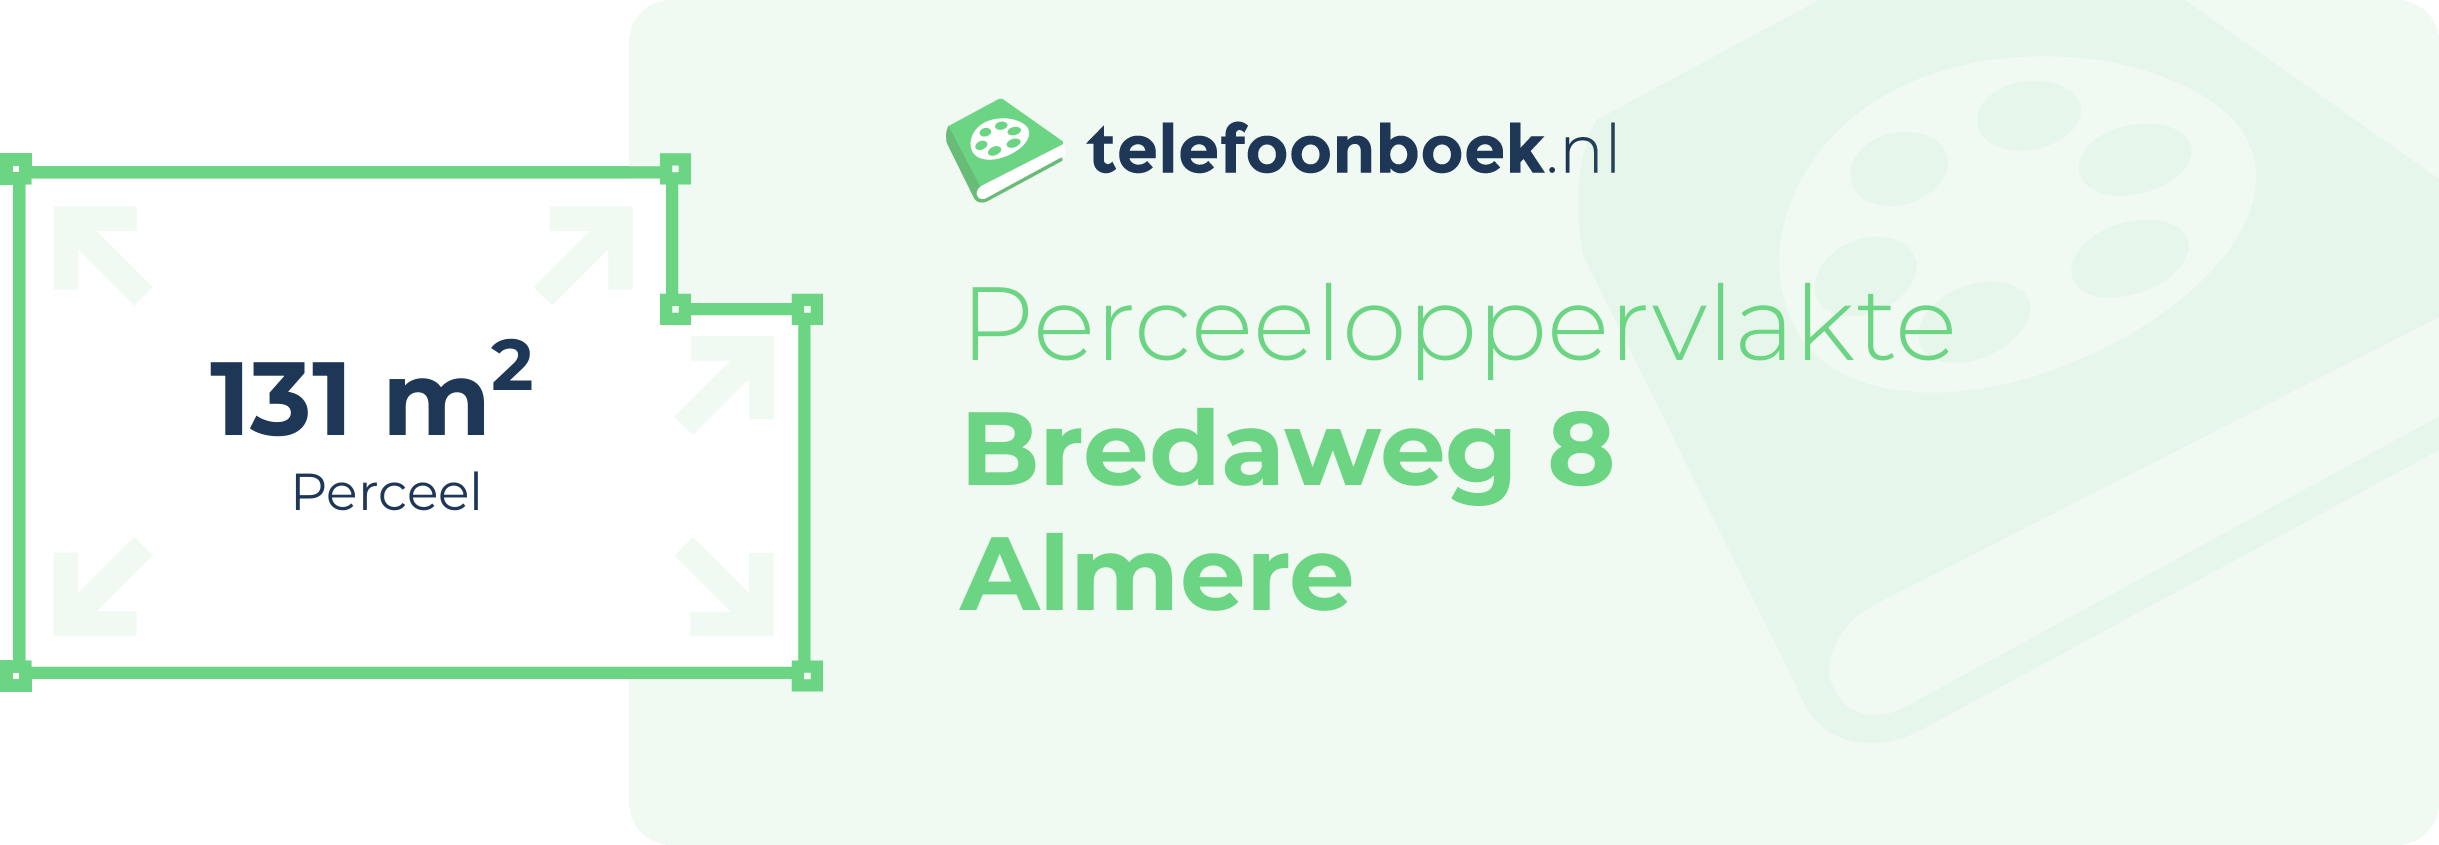 Perceeloppervlakte Bredaweg 8 Almere